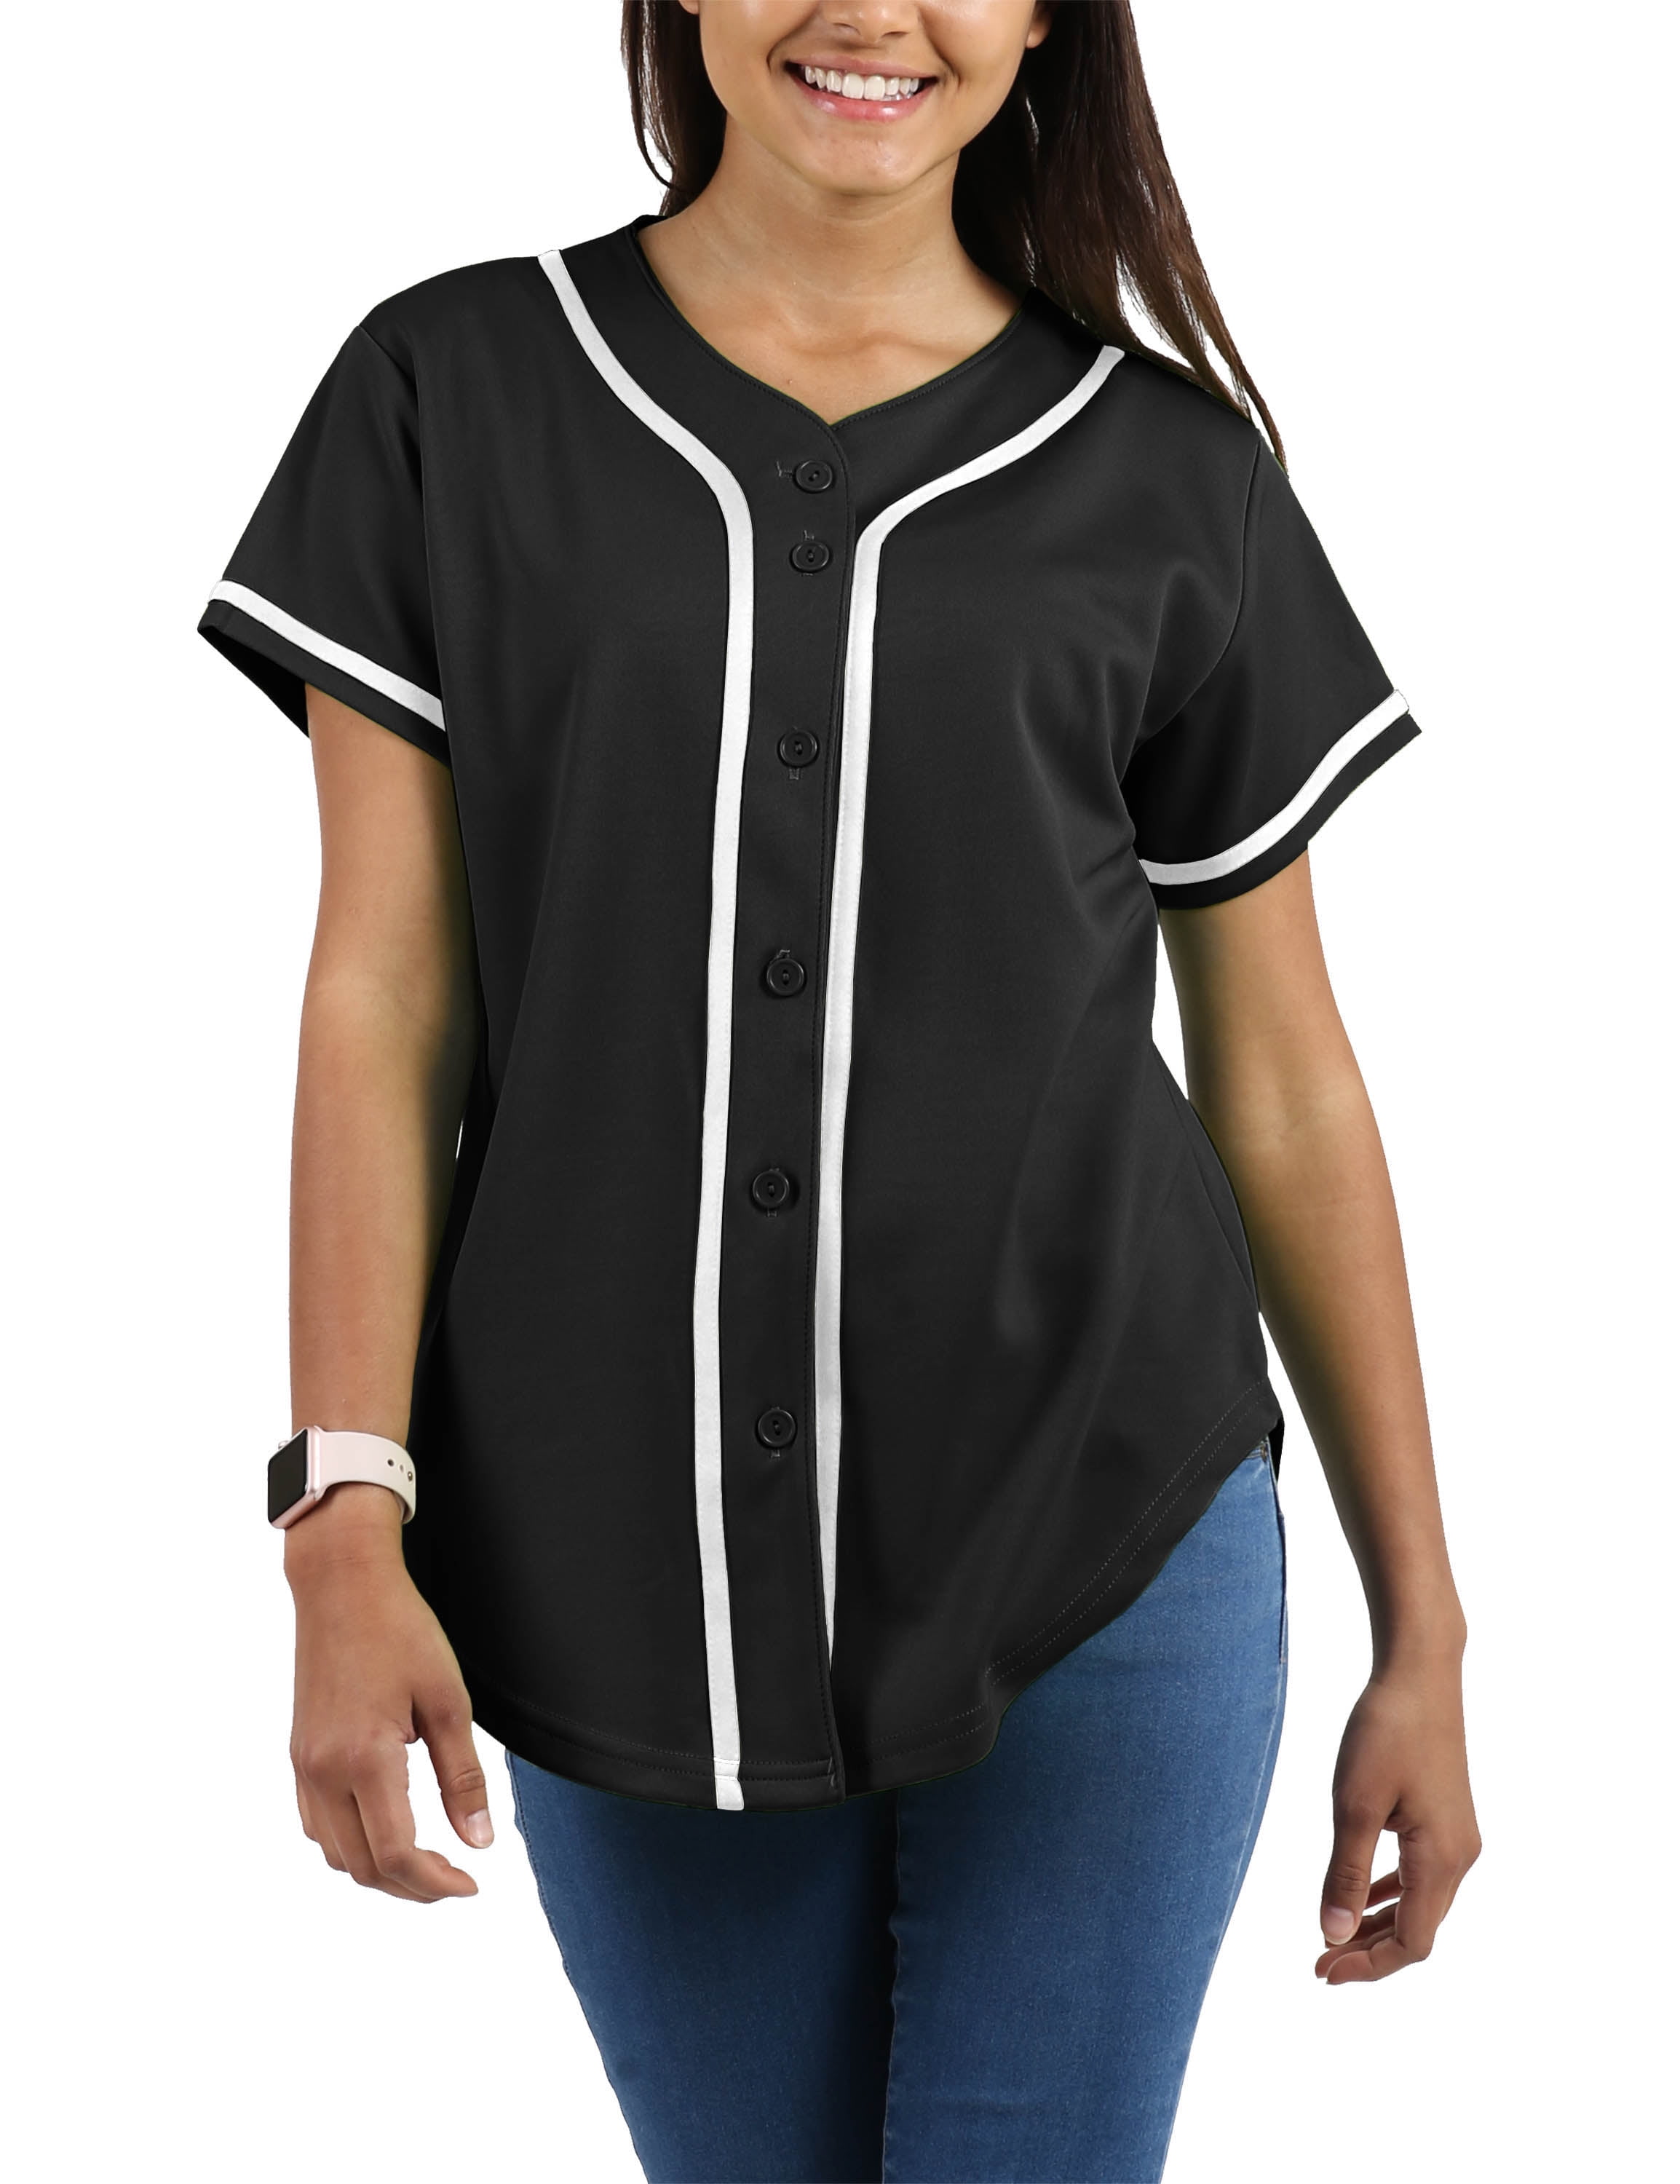 Hip Hop Hipster Short Sleeve Active Shirts oldtimetown Mens Button Down Baseball Jersey Blank Plain Softball Team Uniform 